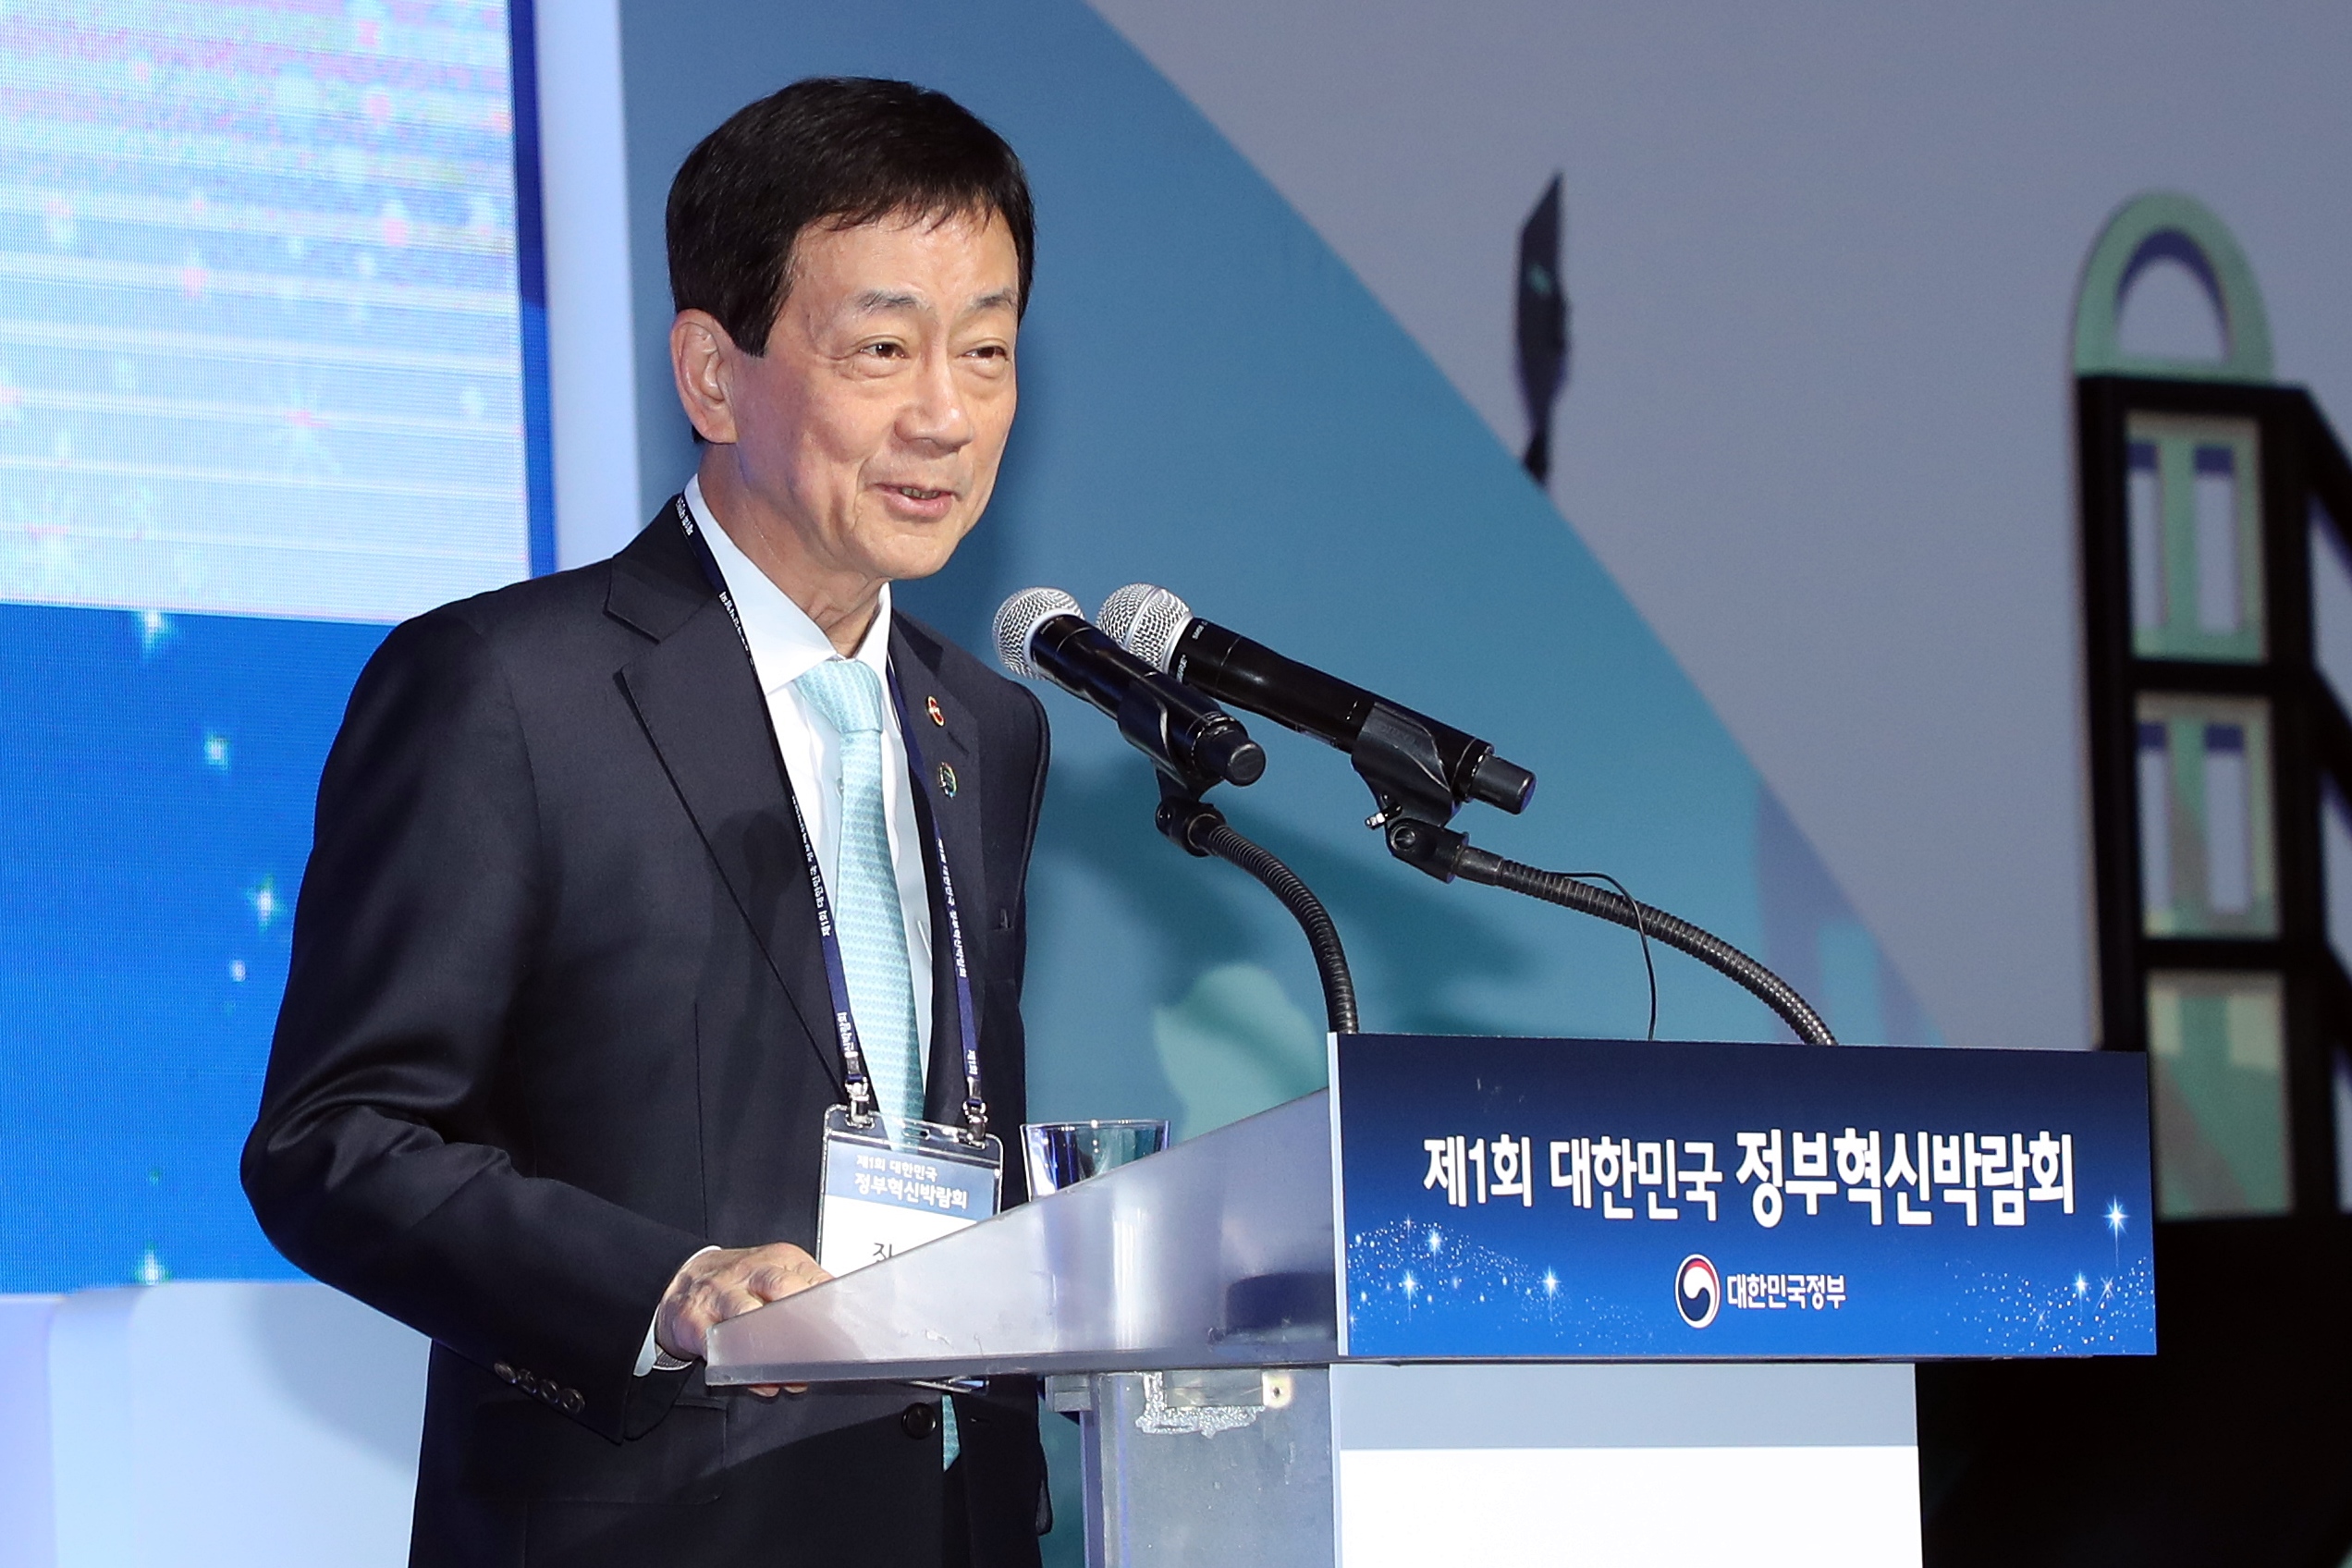 진영 장관이 22일 오전 서울 동대문디지털프라자에서 열린 제1회 대한민국 정부혁신 박람회에서 개회사를 하고 있다.